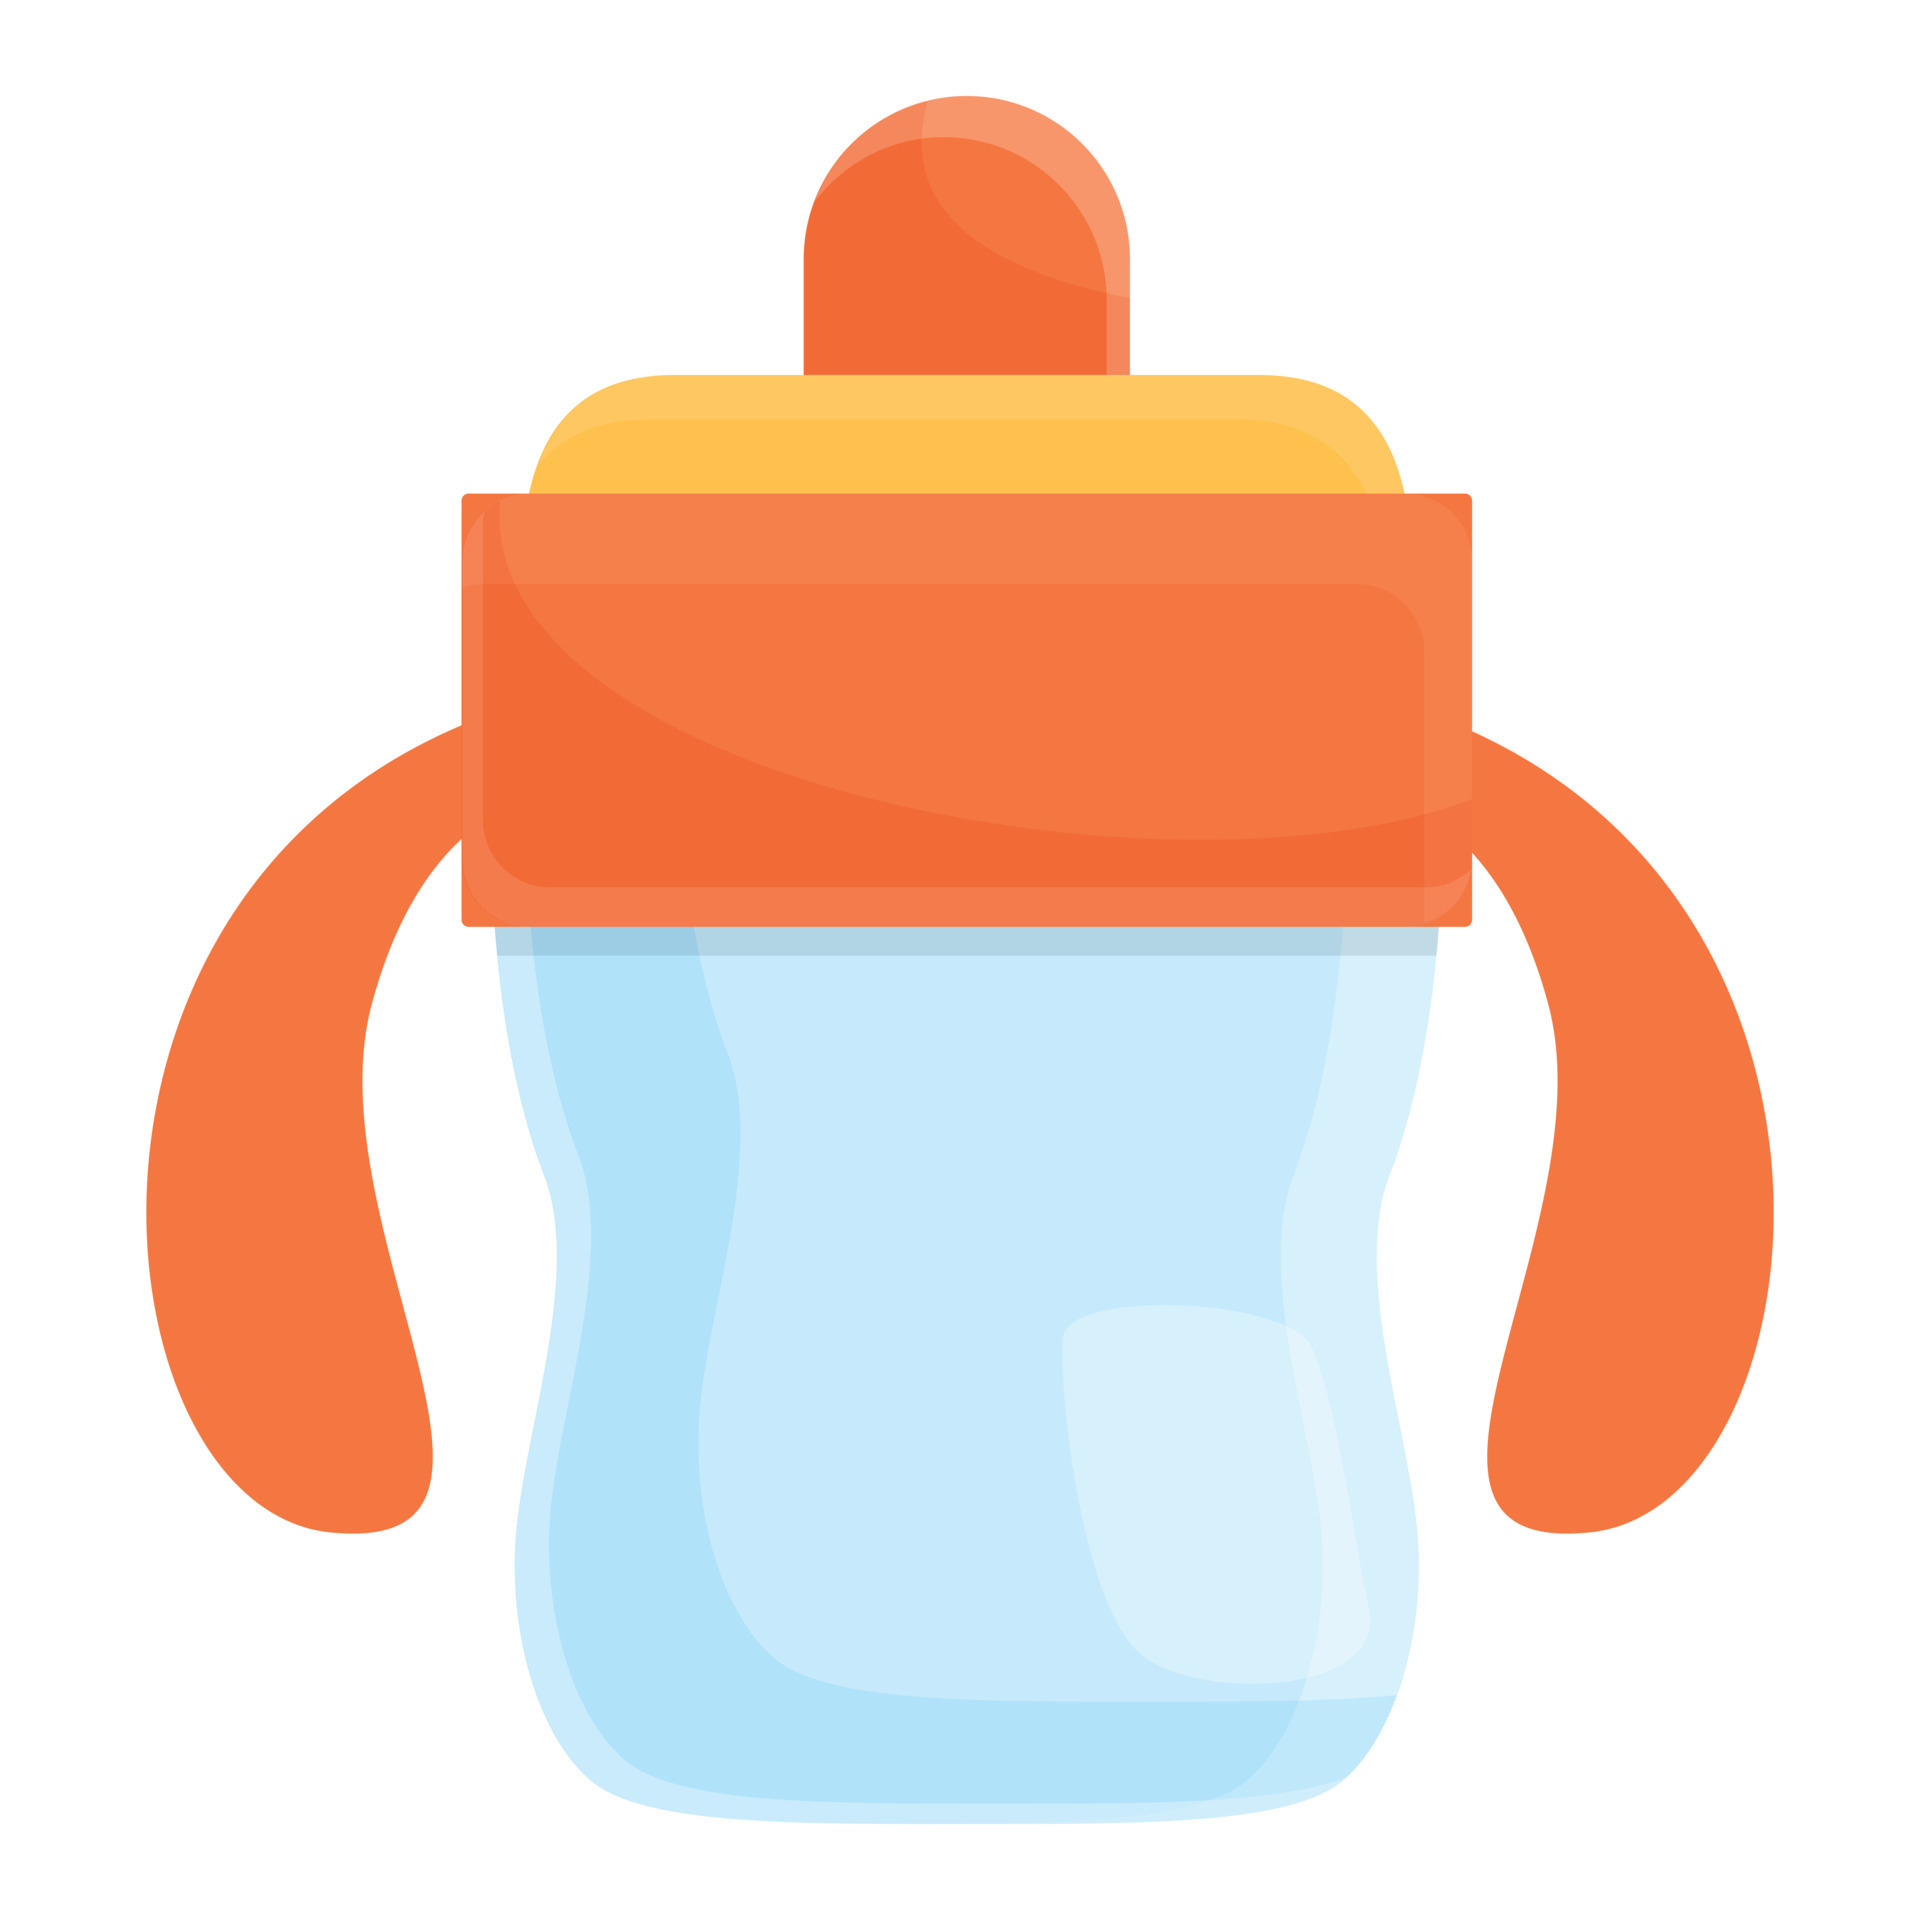 Baby milk bottle icon, cartoon style 14255888 Vector Art at Vecteezy